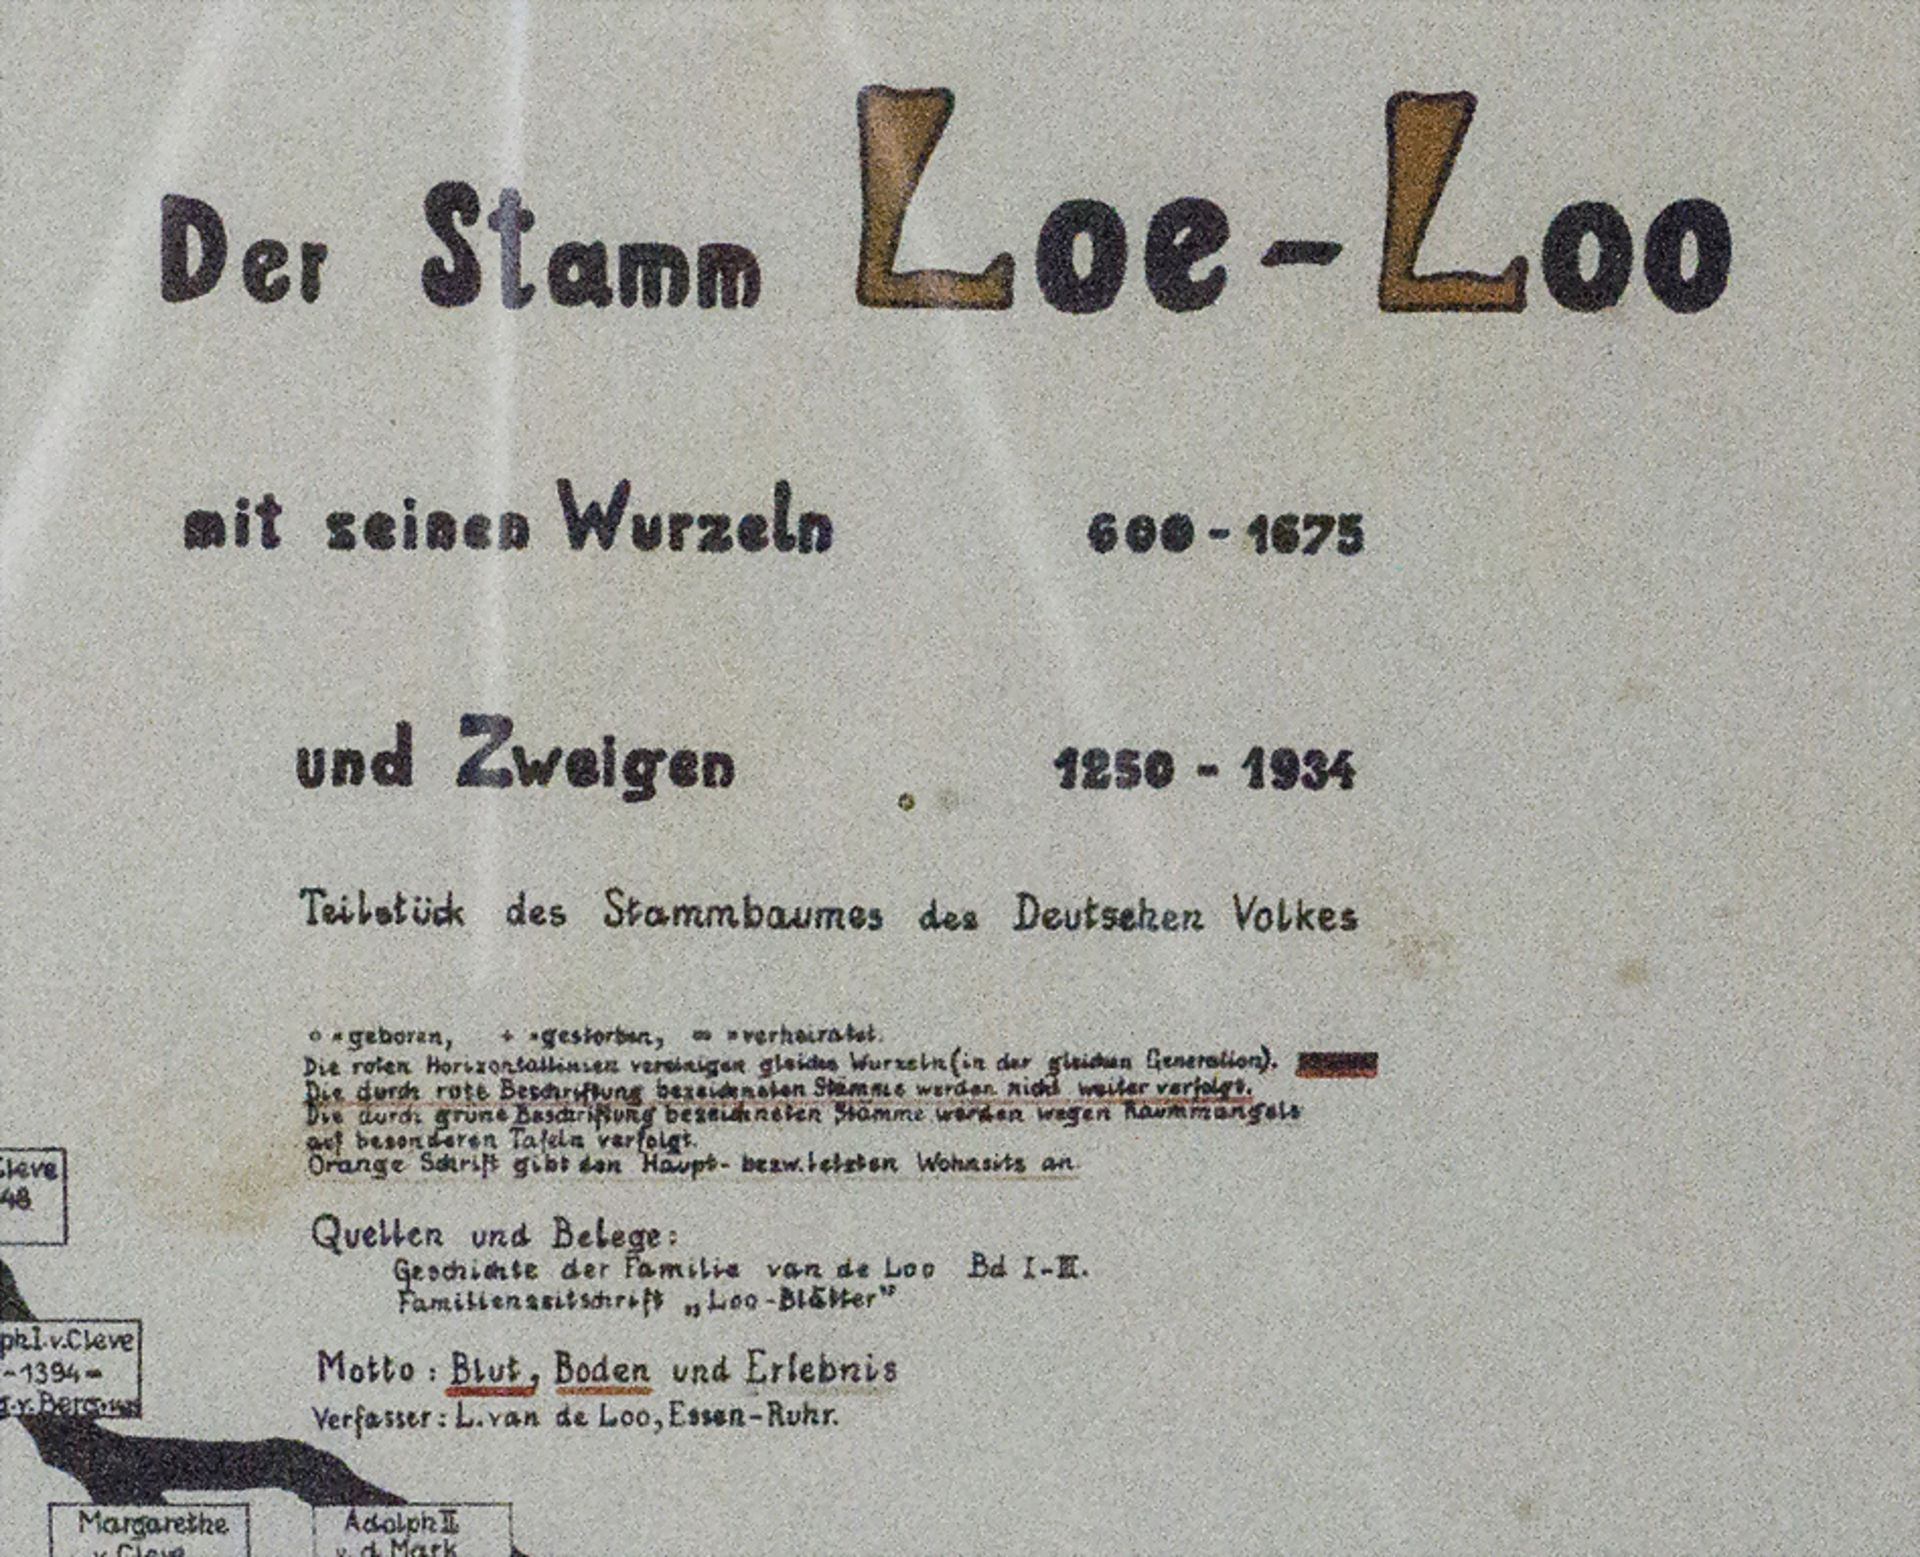 L. van de Loo, 'Der Stamm Loe-Crampe-Loo' / A 'Family tree Loe-Crampe-Loo', Essen, Anfang 20. Jh. - Image 3 of 6